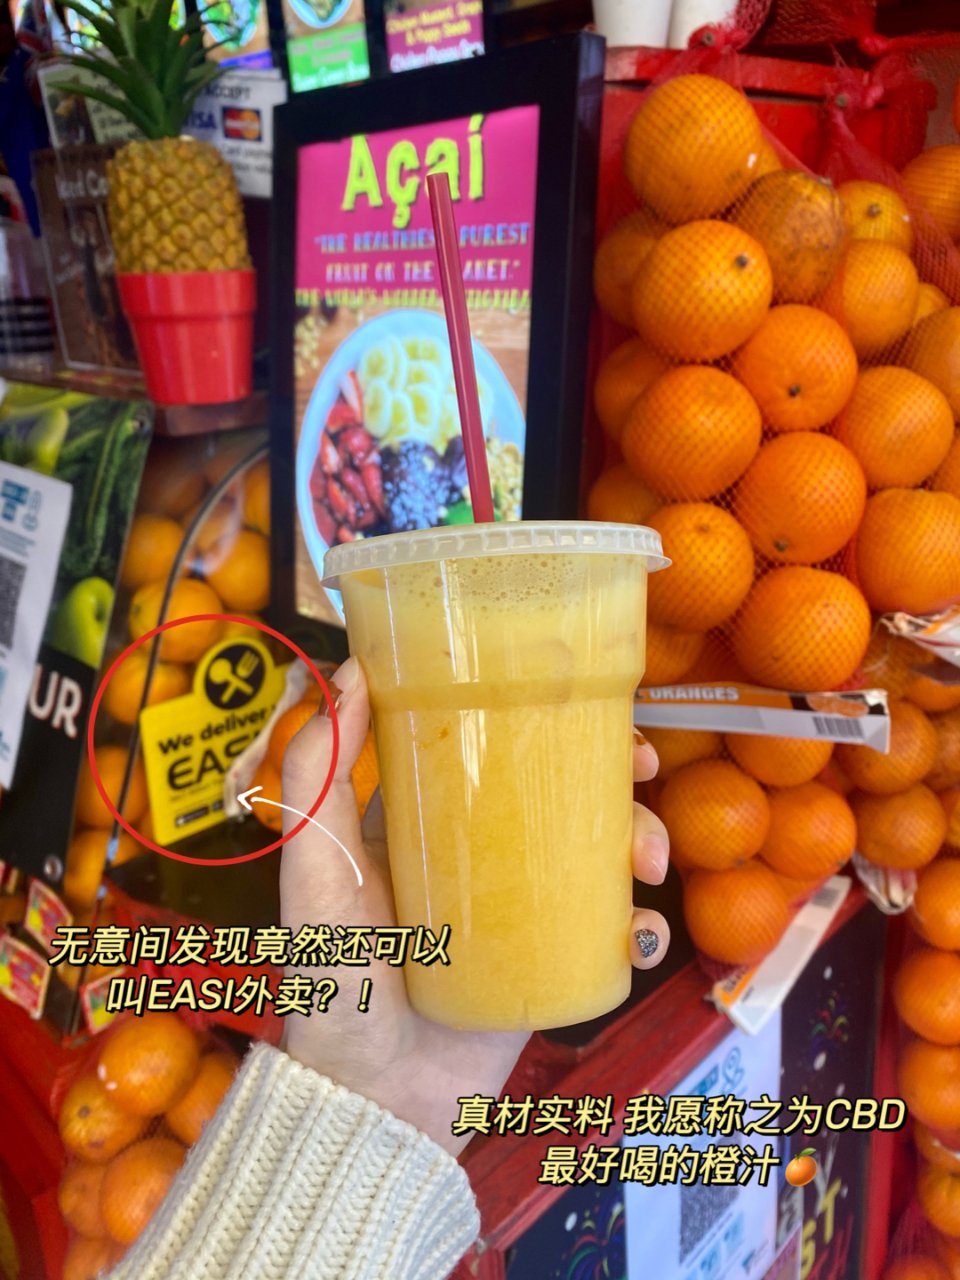 橙汁爱好者的宝藏 墨尔本CBD鲜榨橙汁🍊...